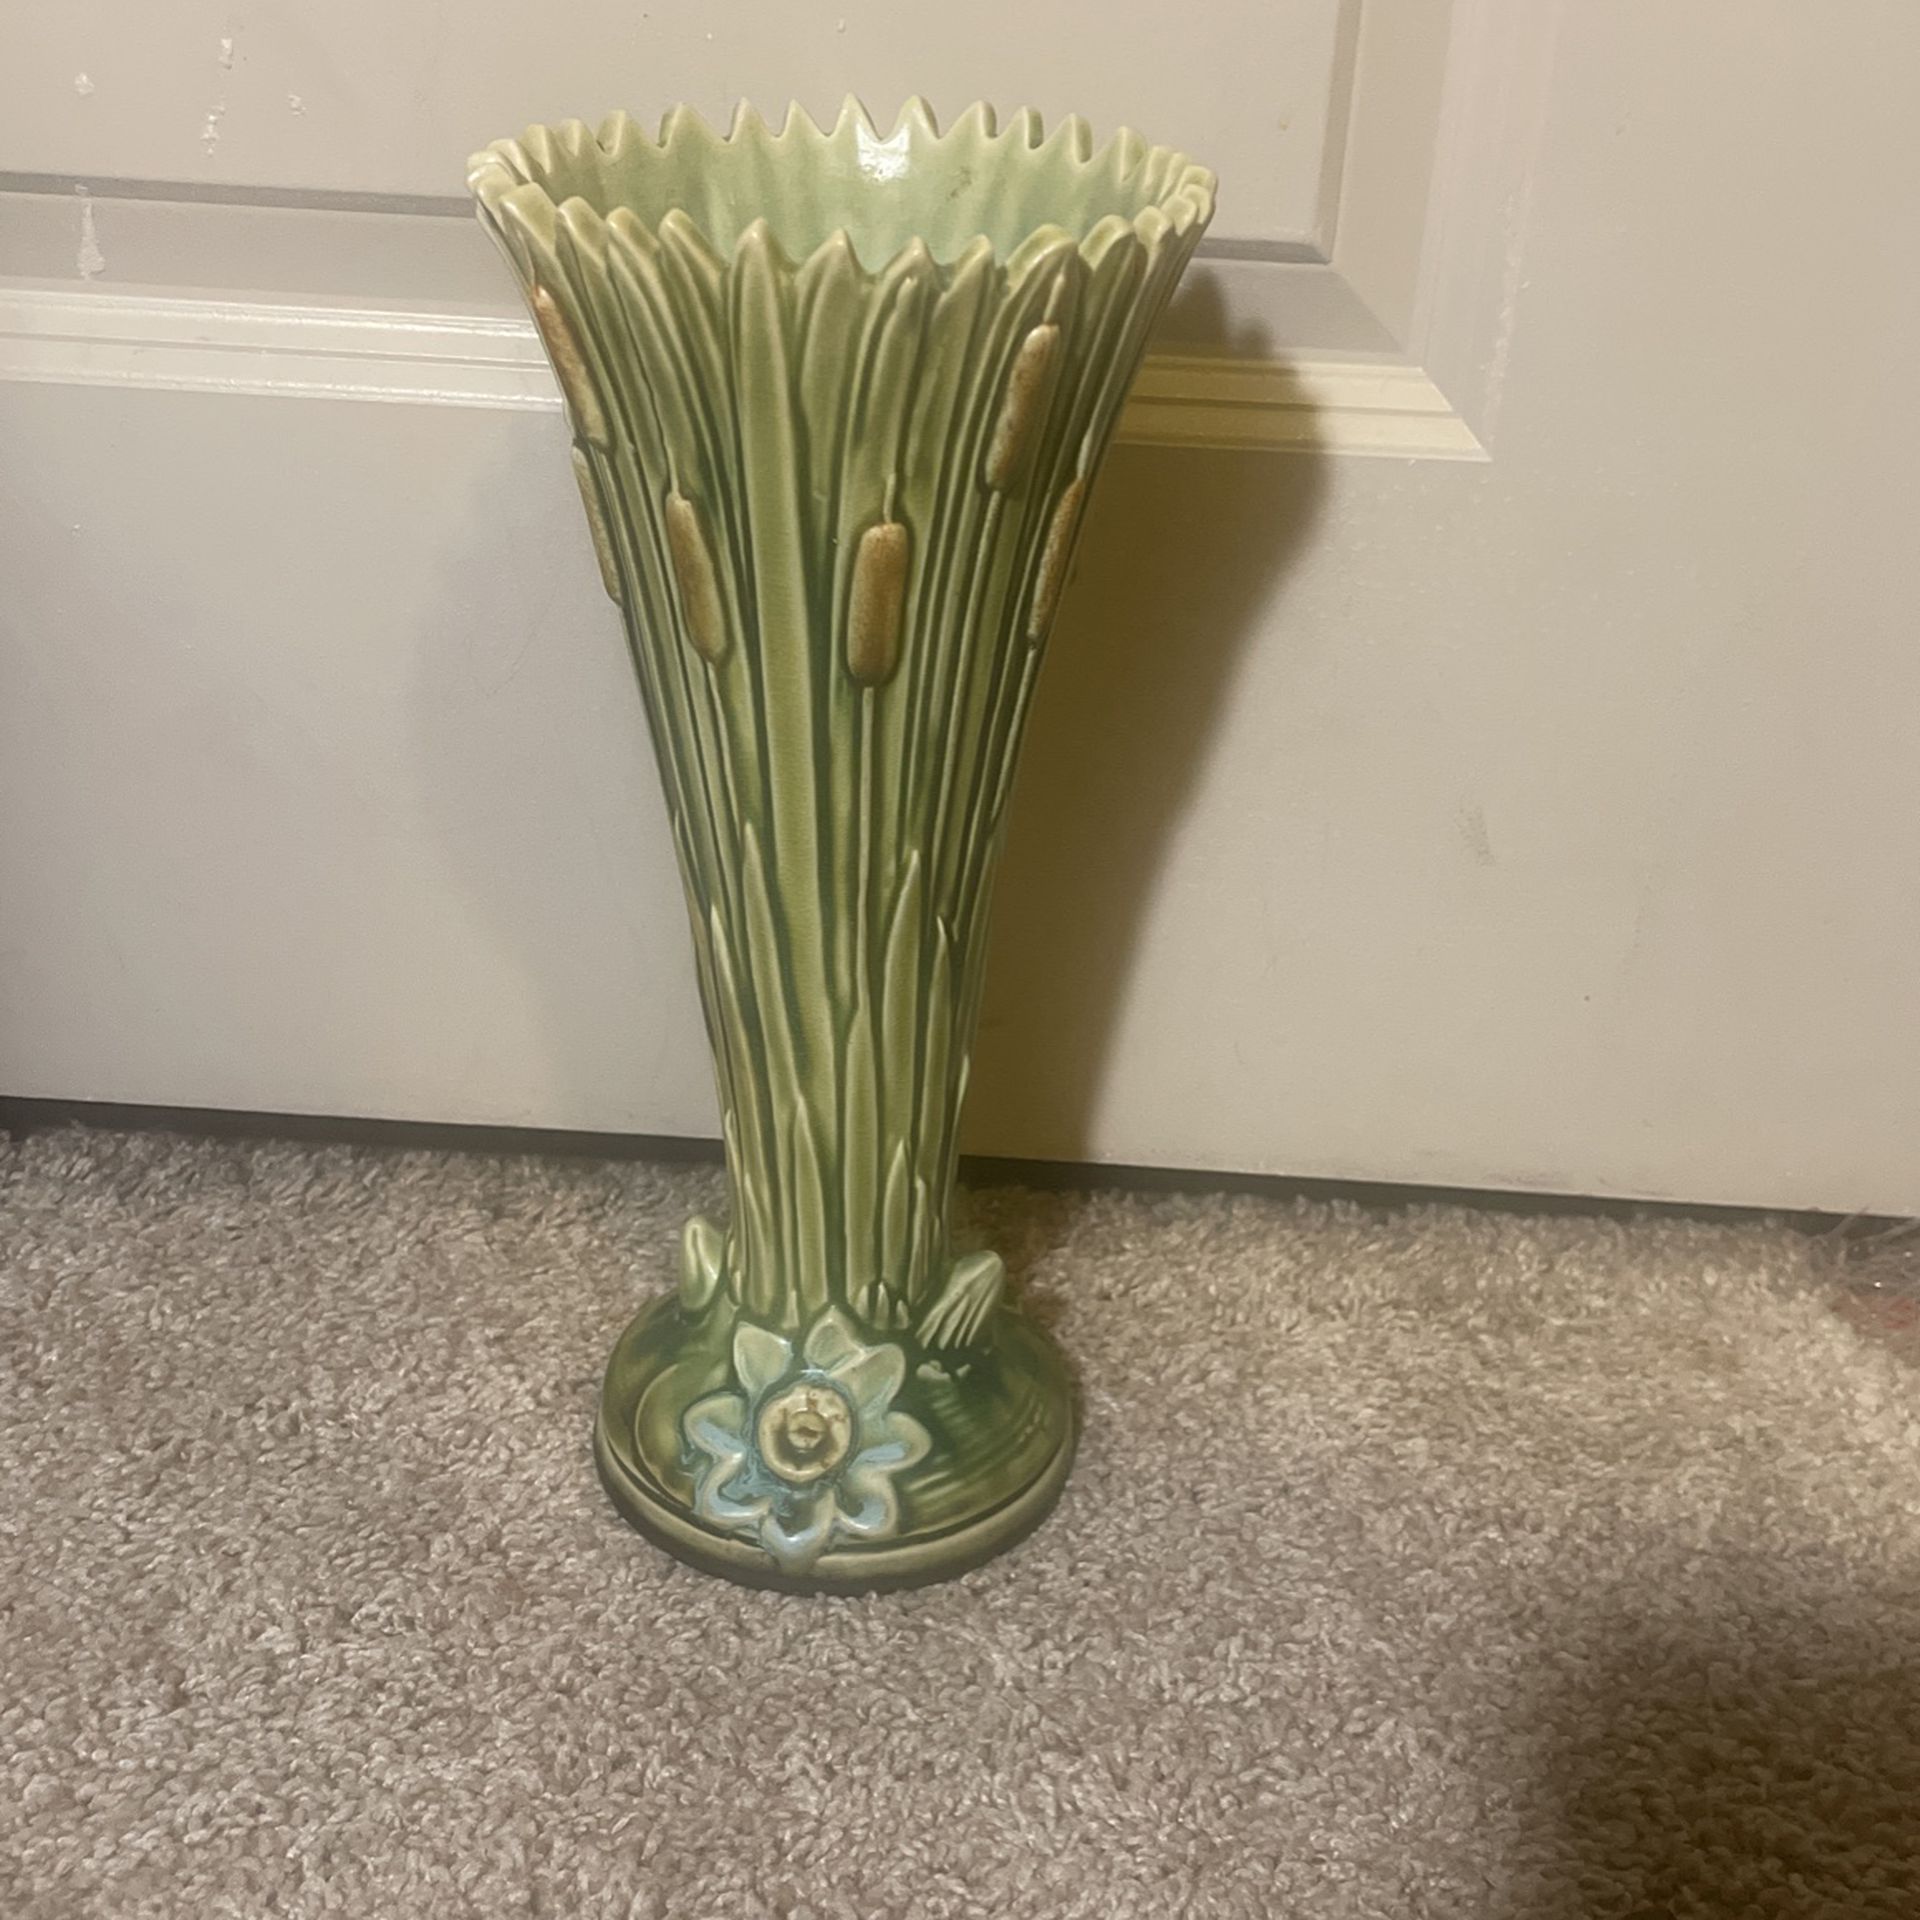 Weller Ware Pottery Vase